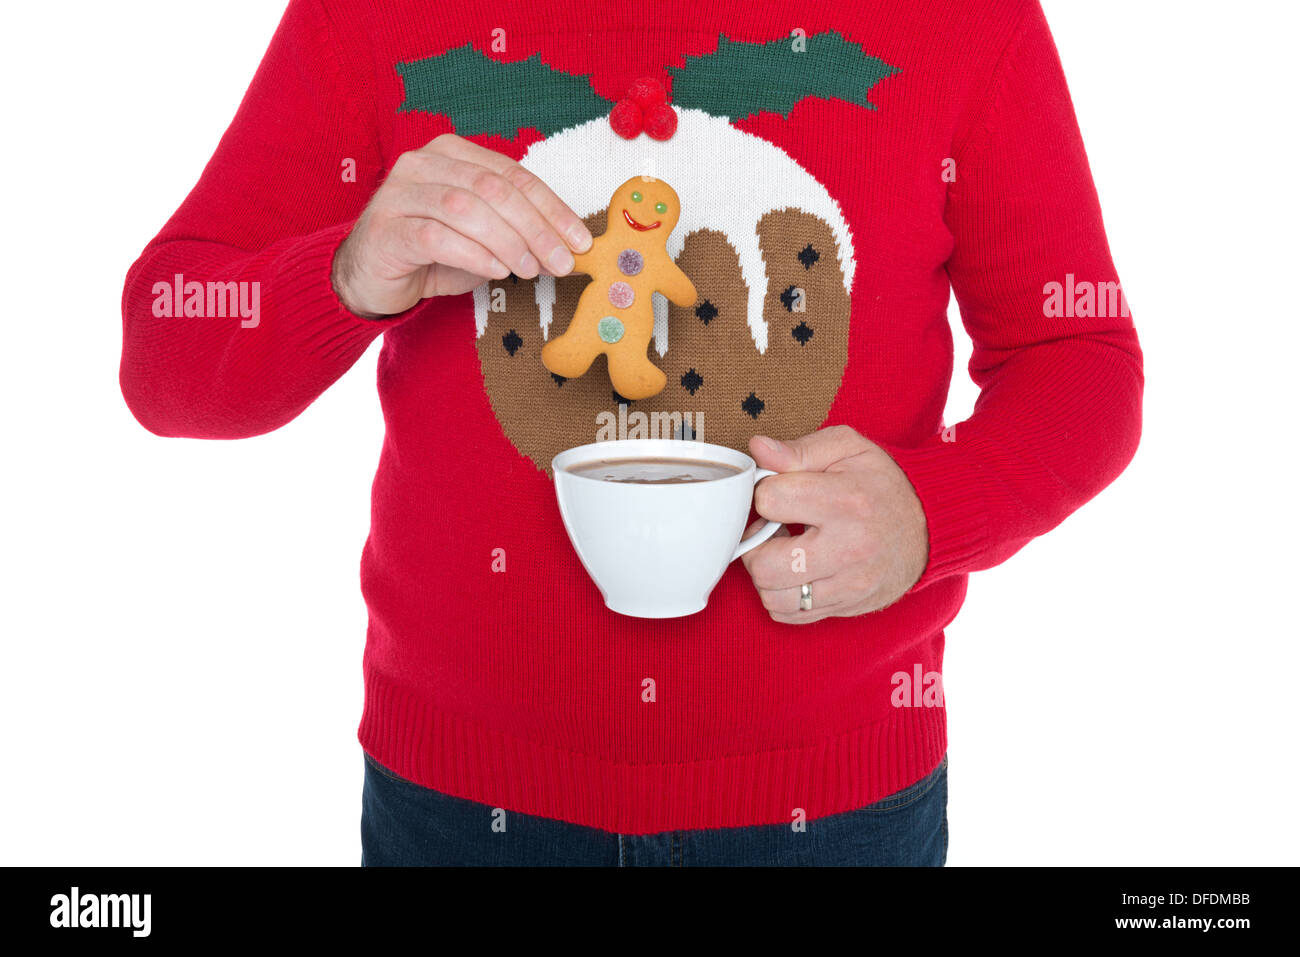 Hombre que llevaba un puente de Navidad a punto de sumergir una galleta de jengibre en una taza de chocolate caliente, aisladas contra un fondo blanco. Foto de stock